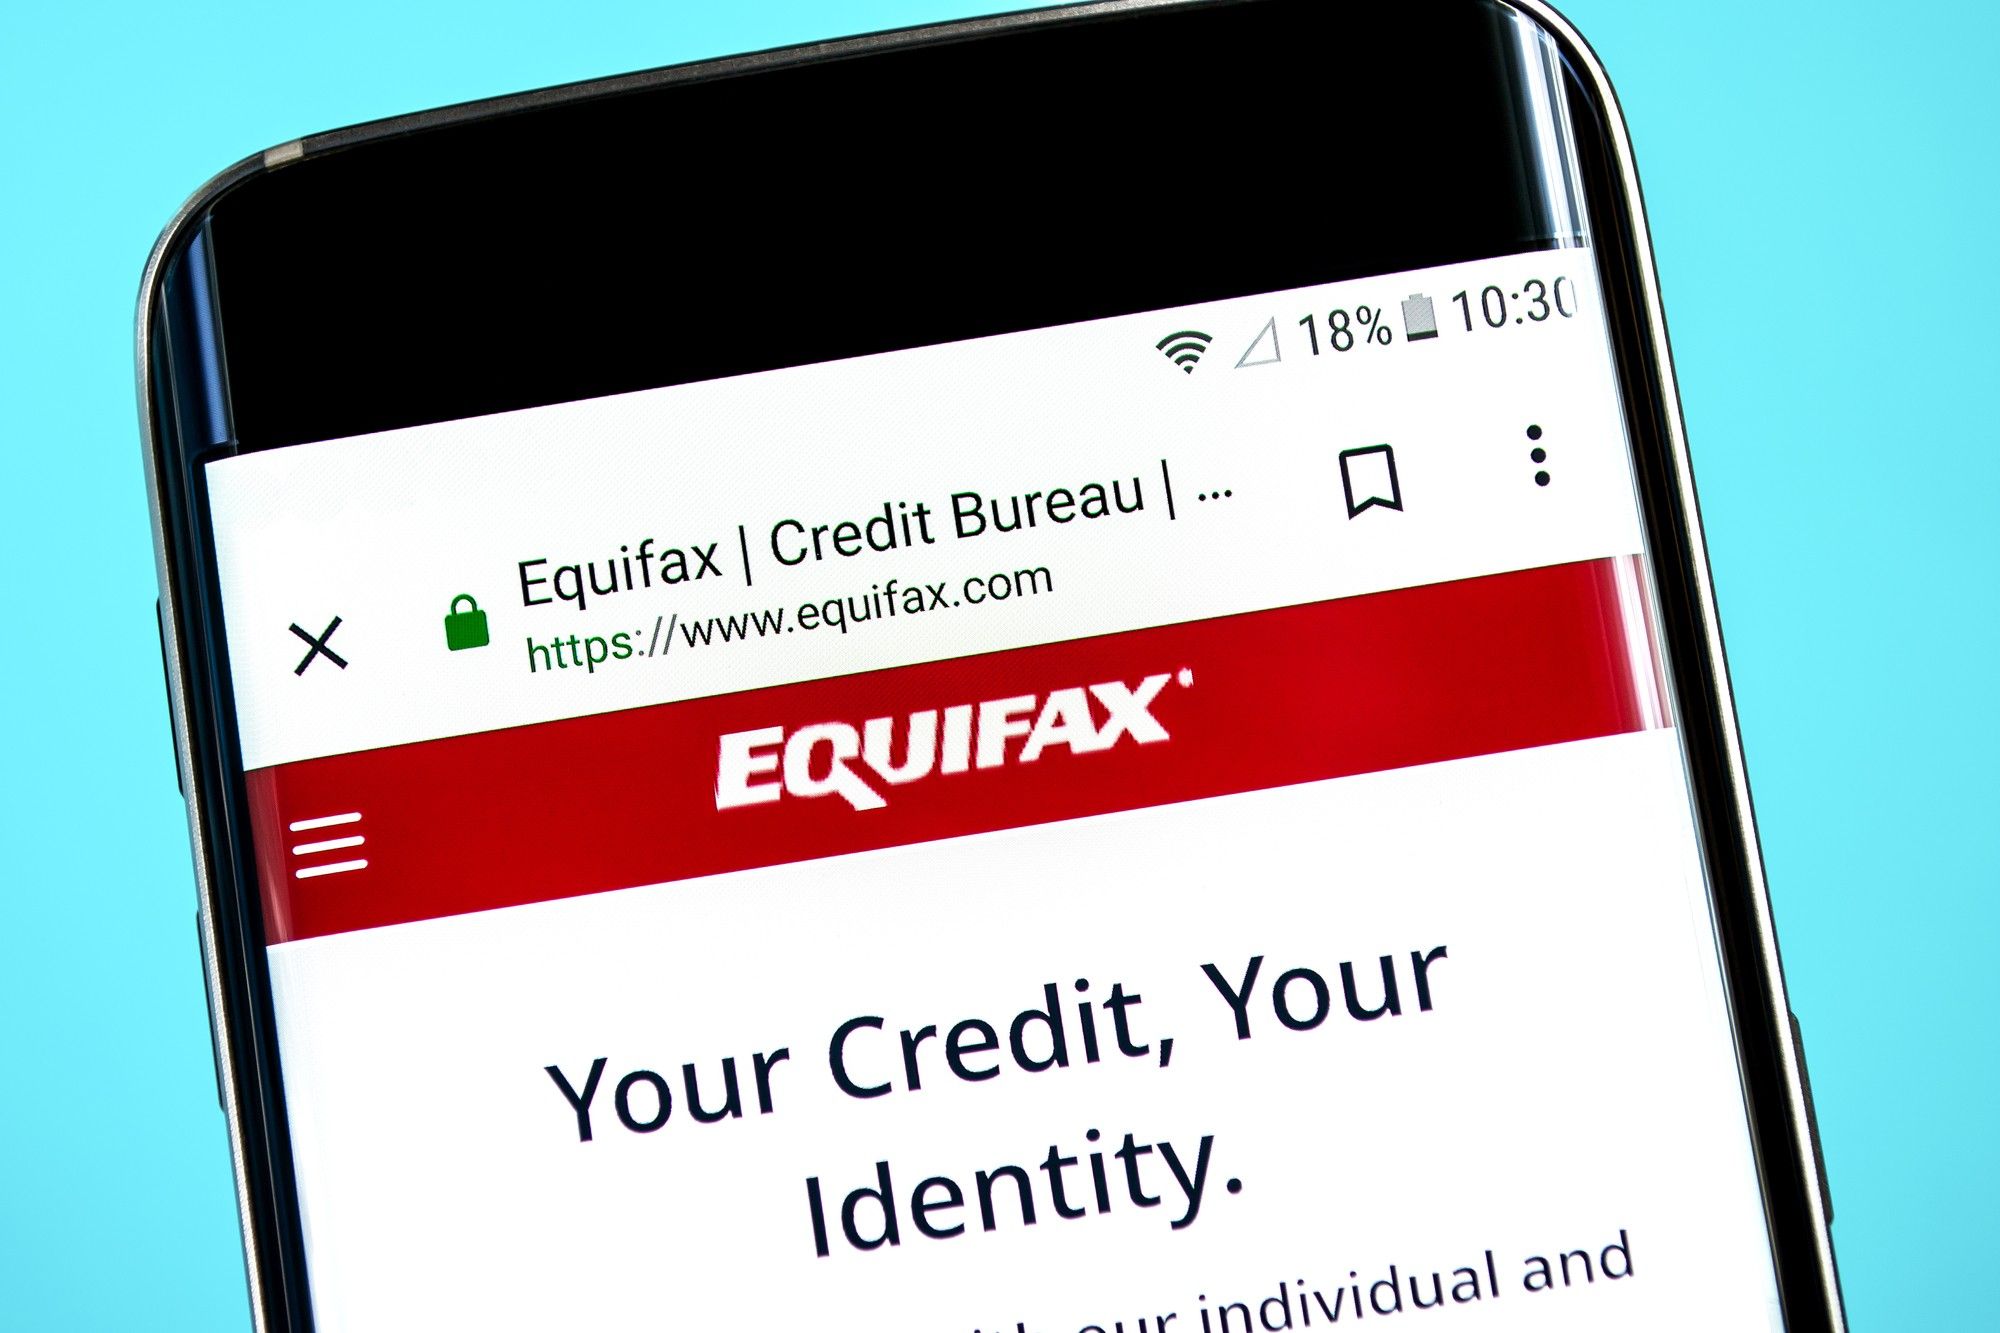 Equifax app regarding the data breach 